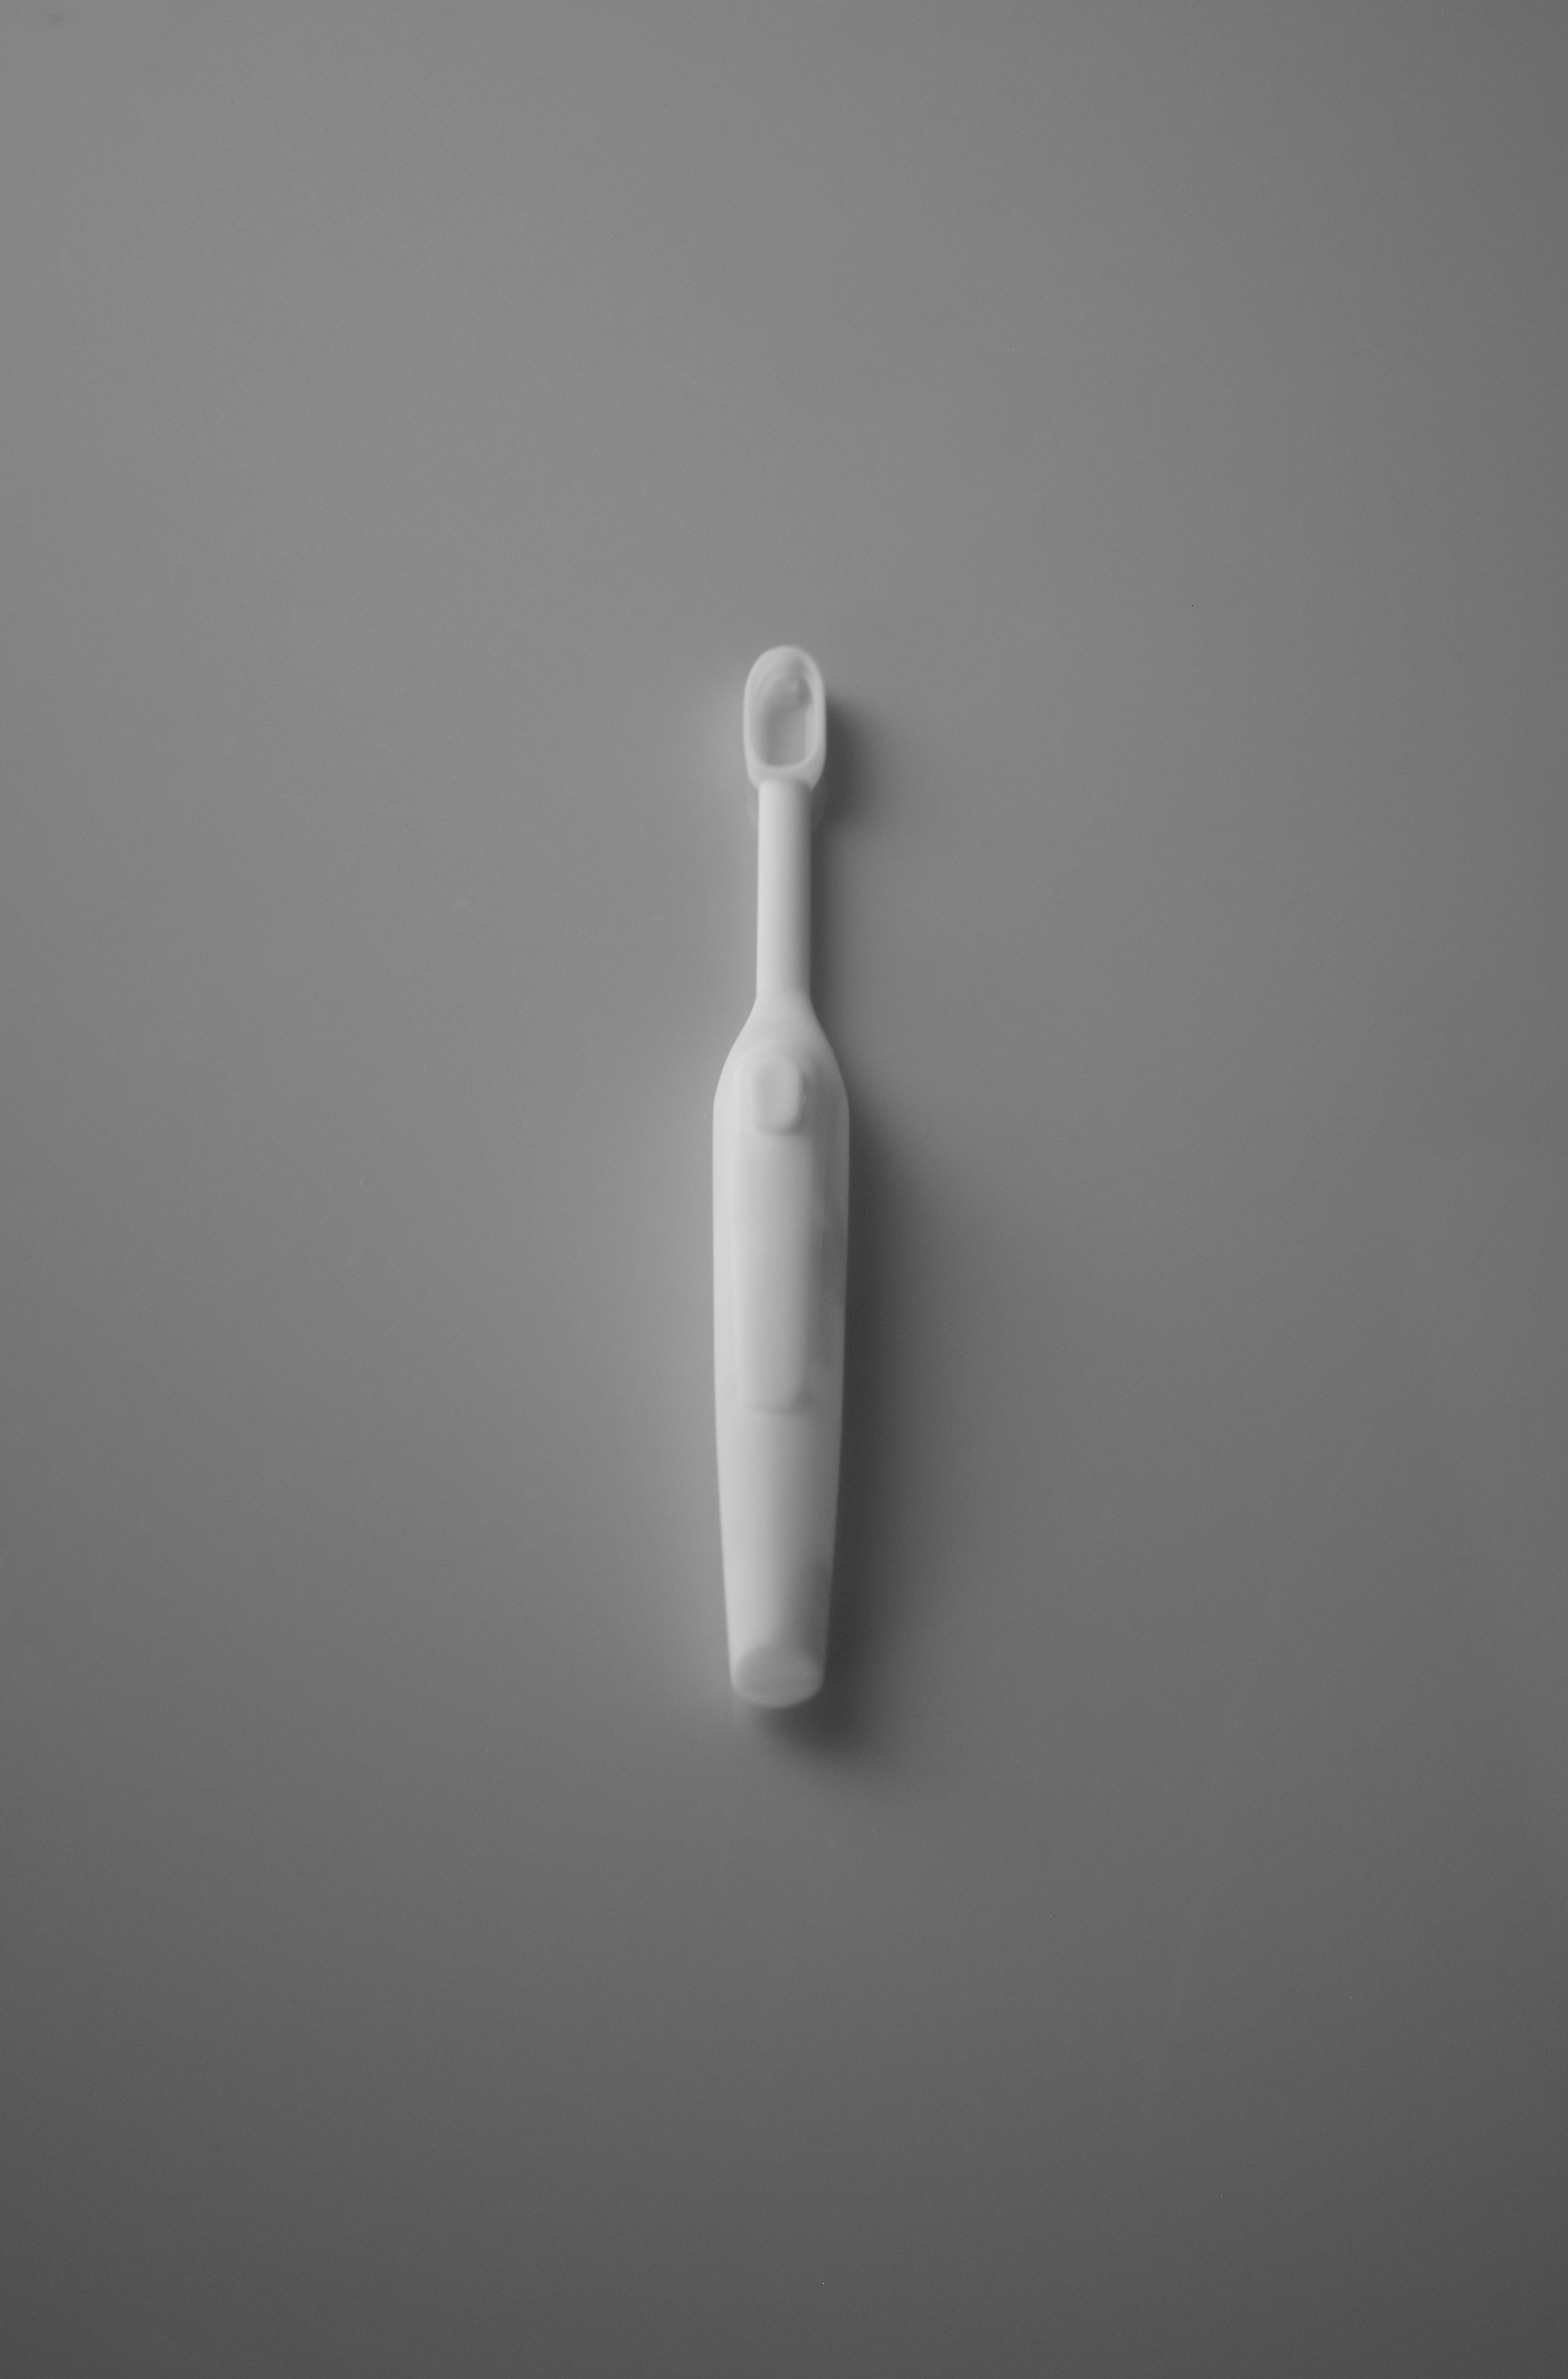 5.1 시제품 단품 - 치석제거 칫솔 3D 프린팅 시제품